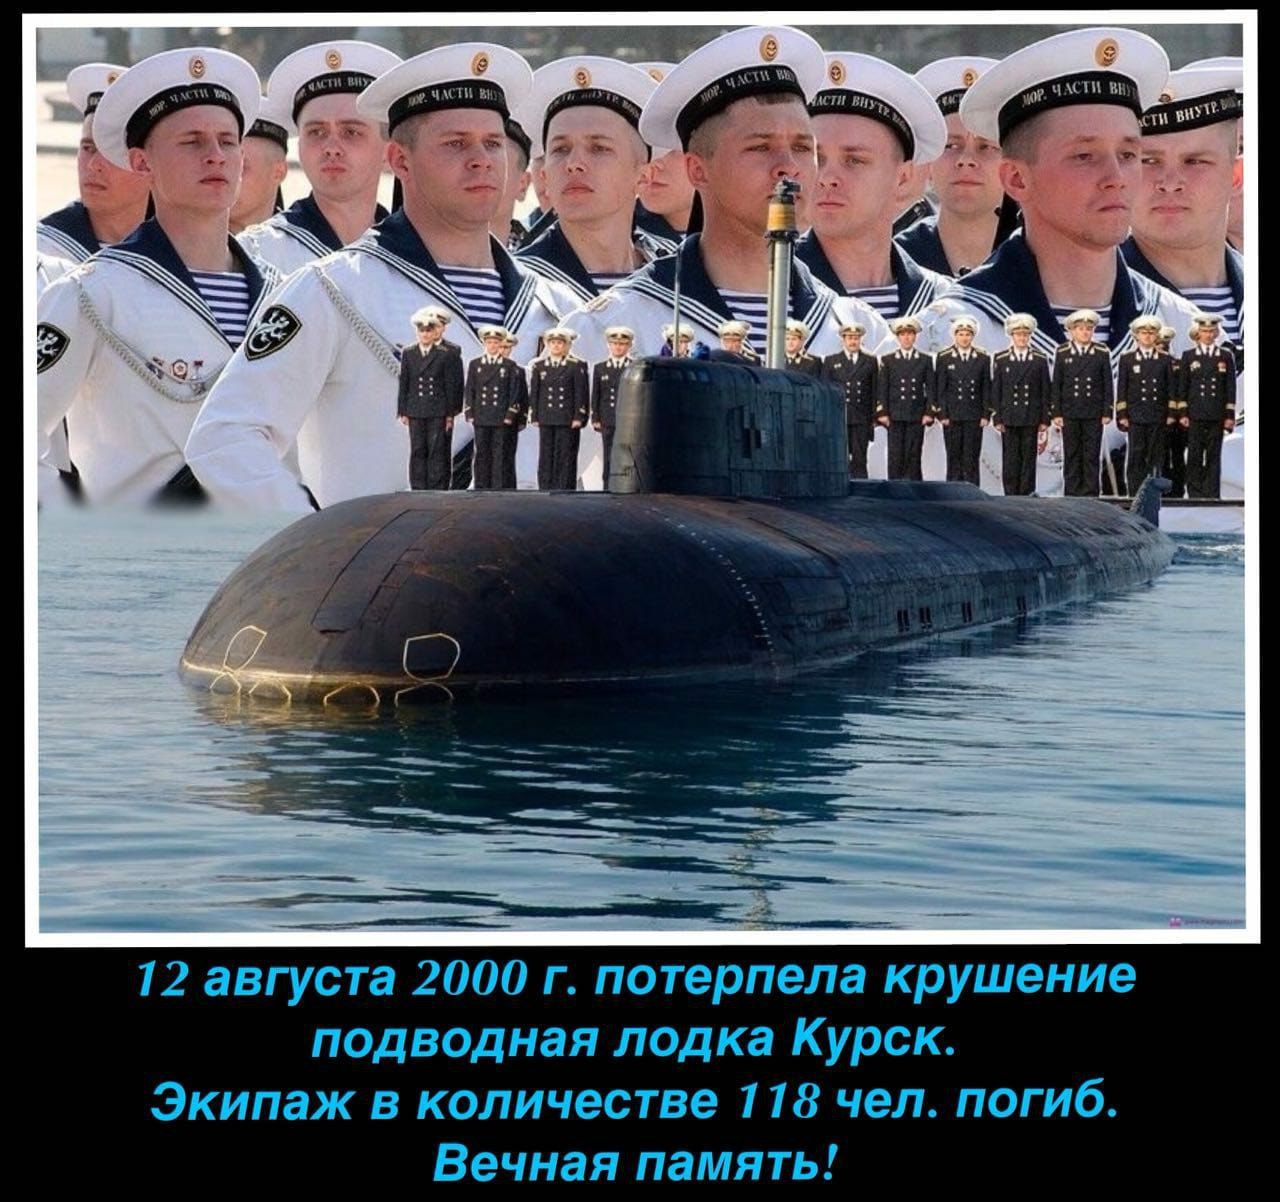 Подводный флот праздник. Подводная лодка к-141 «Курск». АПЛ Курск экипаж 2000. АПРК К 141 Курск экипаж. Память экипажа подводной лодки Курск.